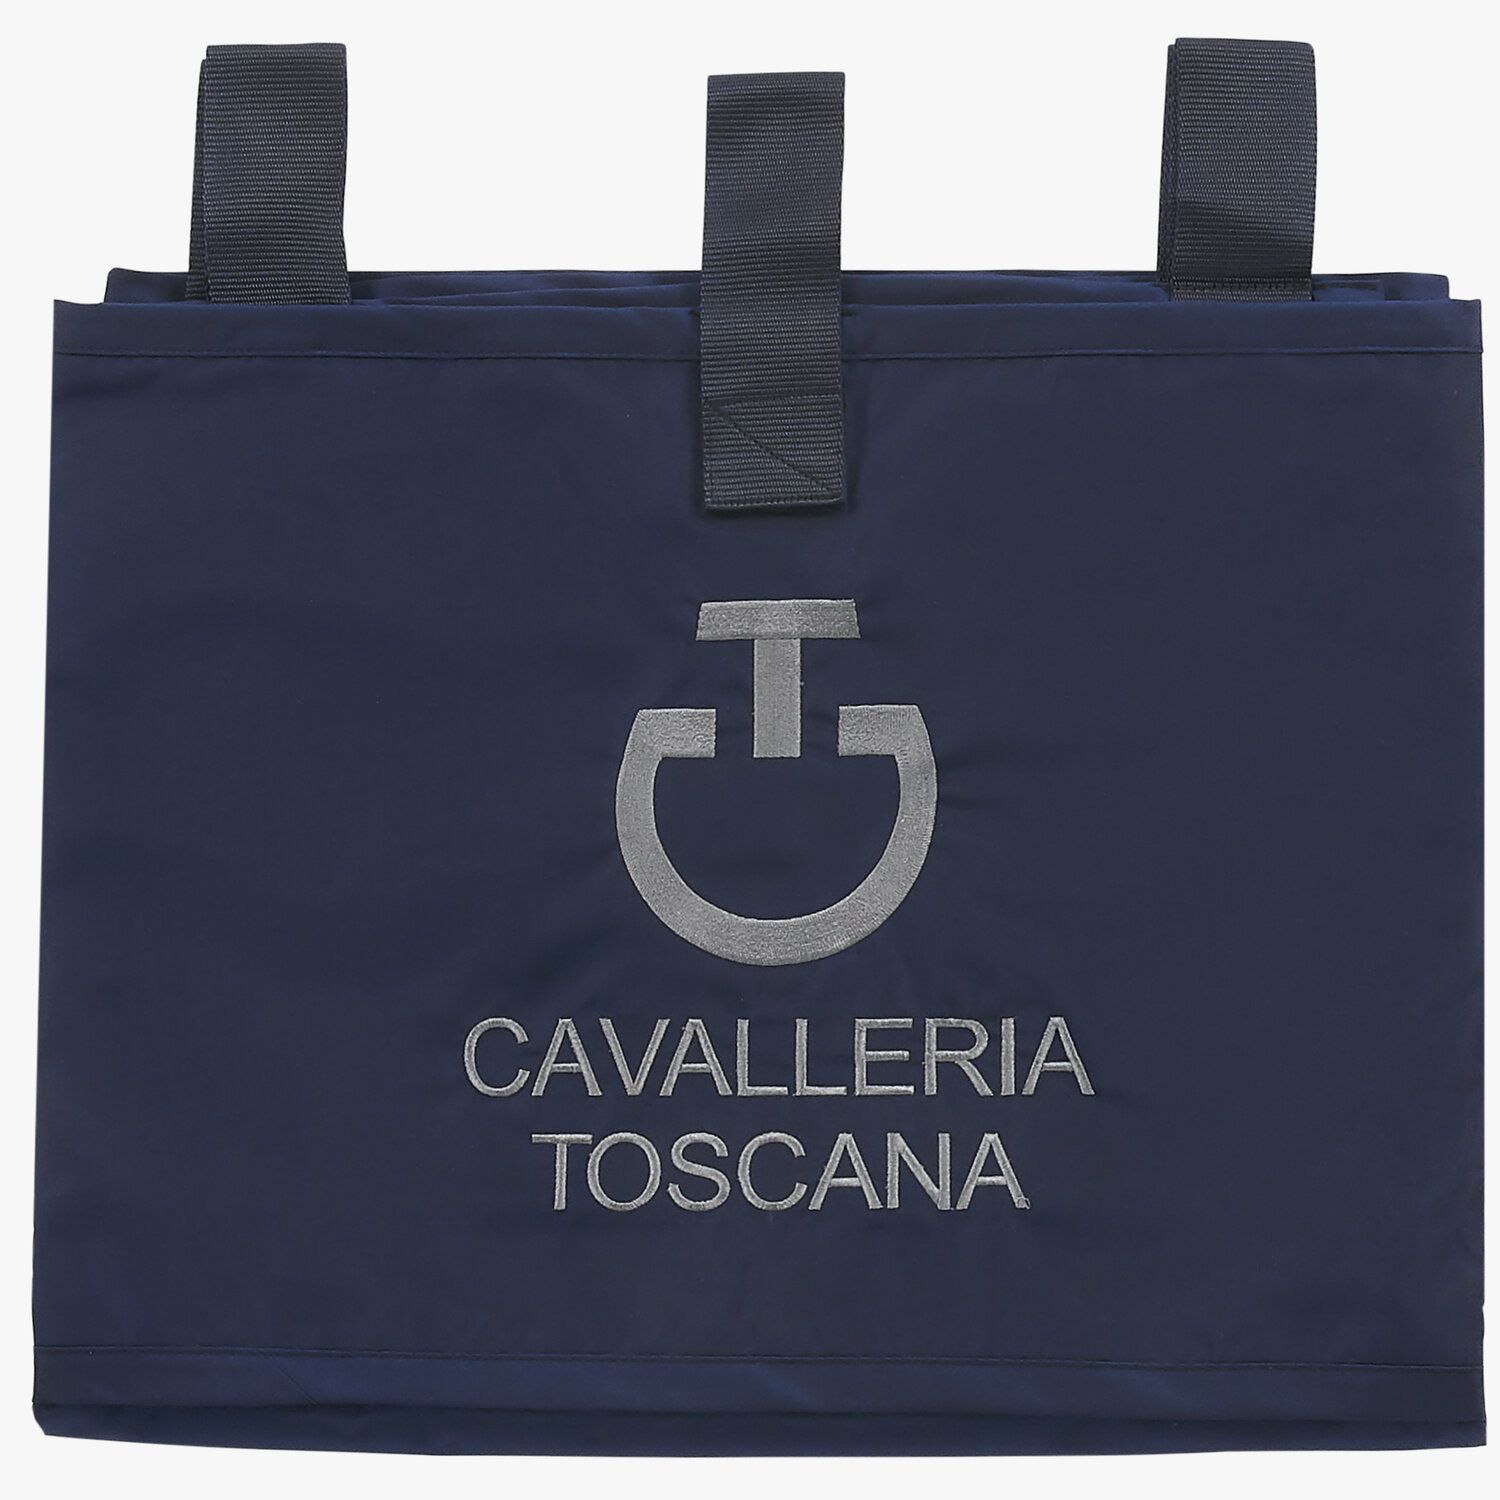 Cavalleria Toscana Water resistant stable curtain DARK BLUE/DARK BLUE-2